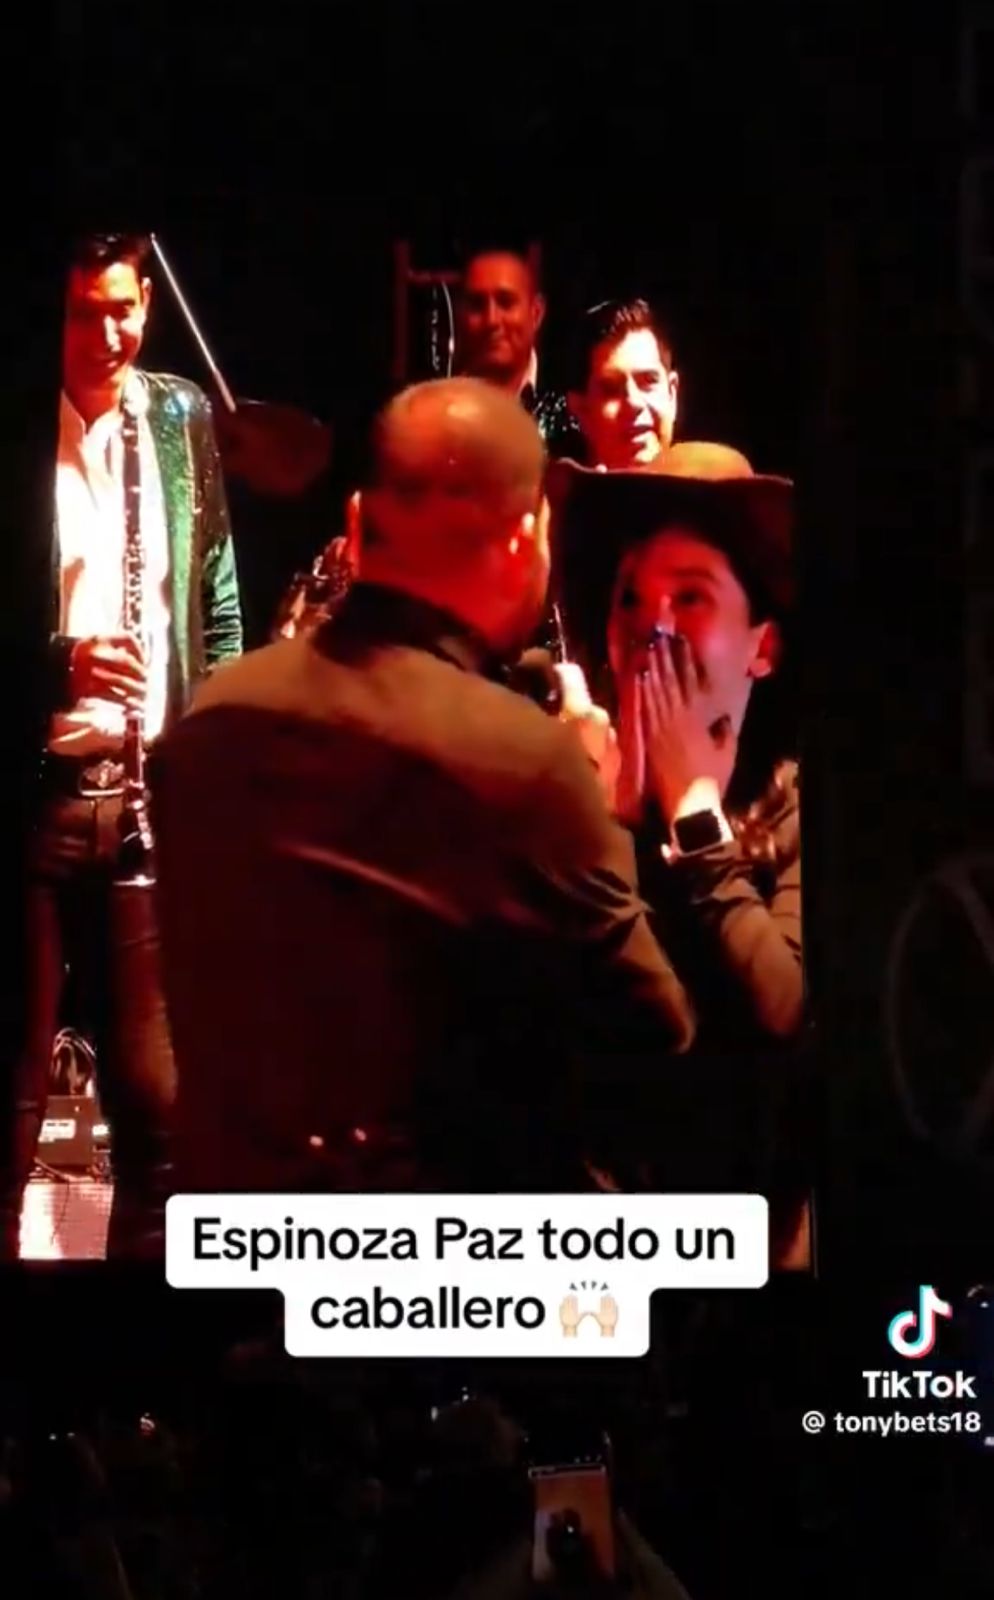 Fan intenta robar beso a Espinoza Paz